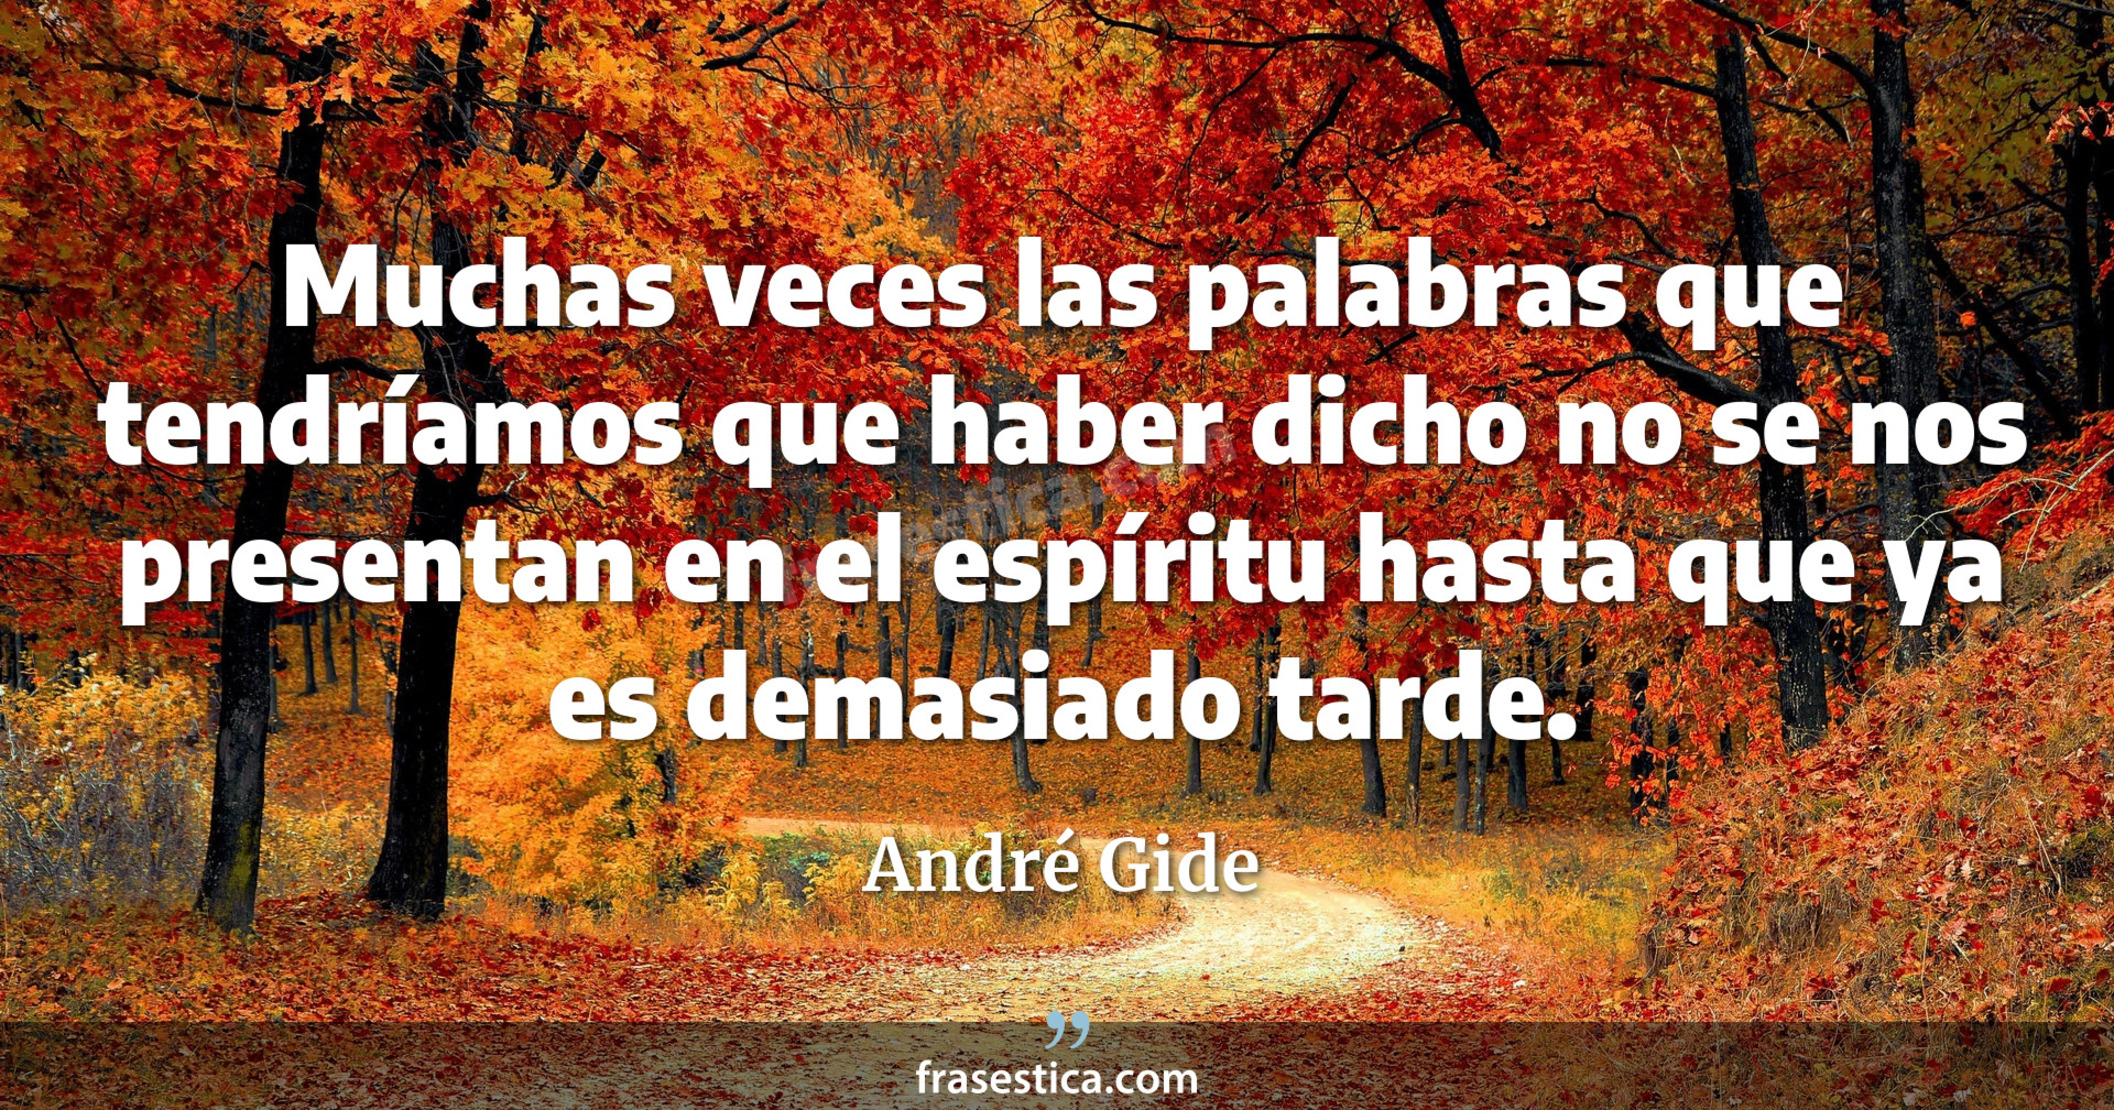 Muchas veces las palabras que tendríamos que haber dicho no se nos presentan en el espíritu hasta que ya es demasiado tarde. - André Gide